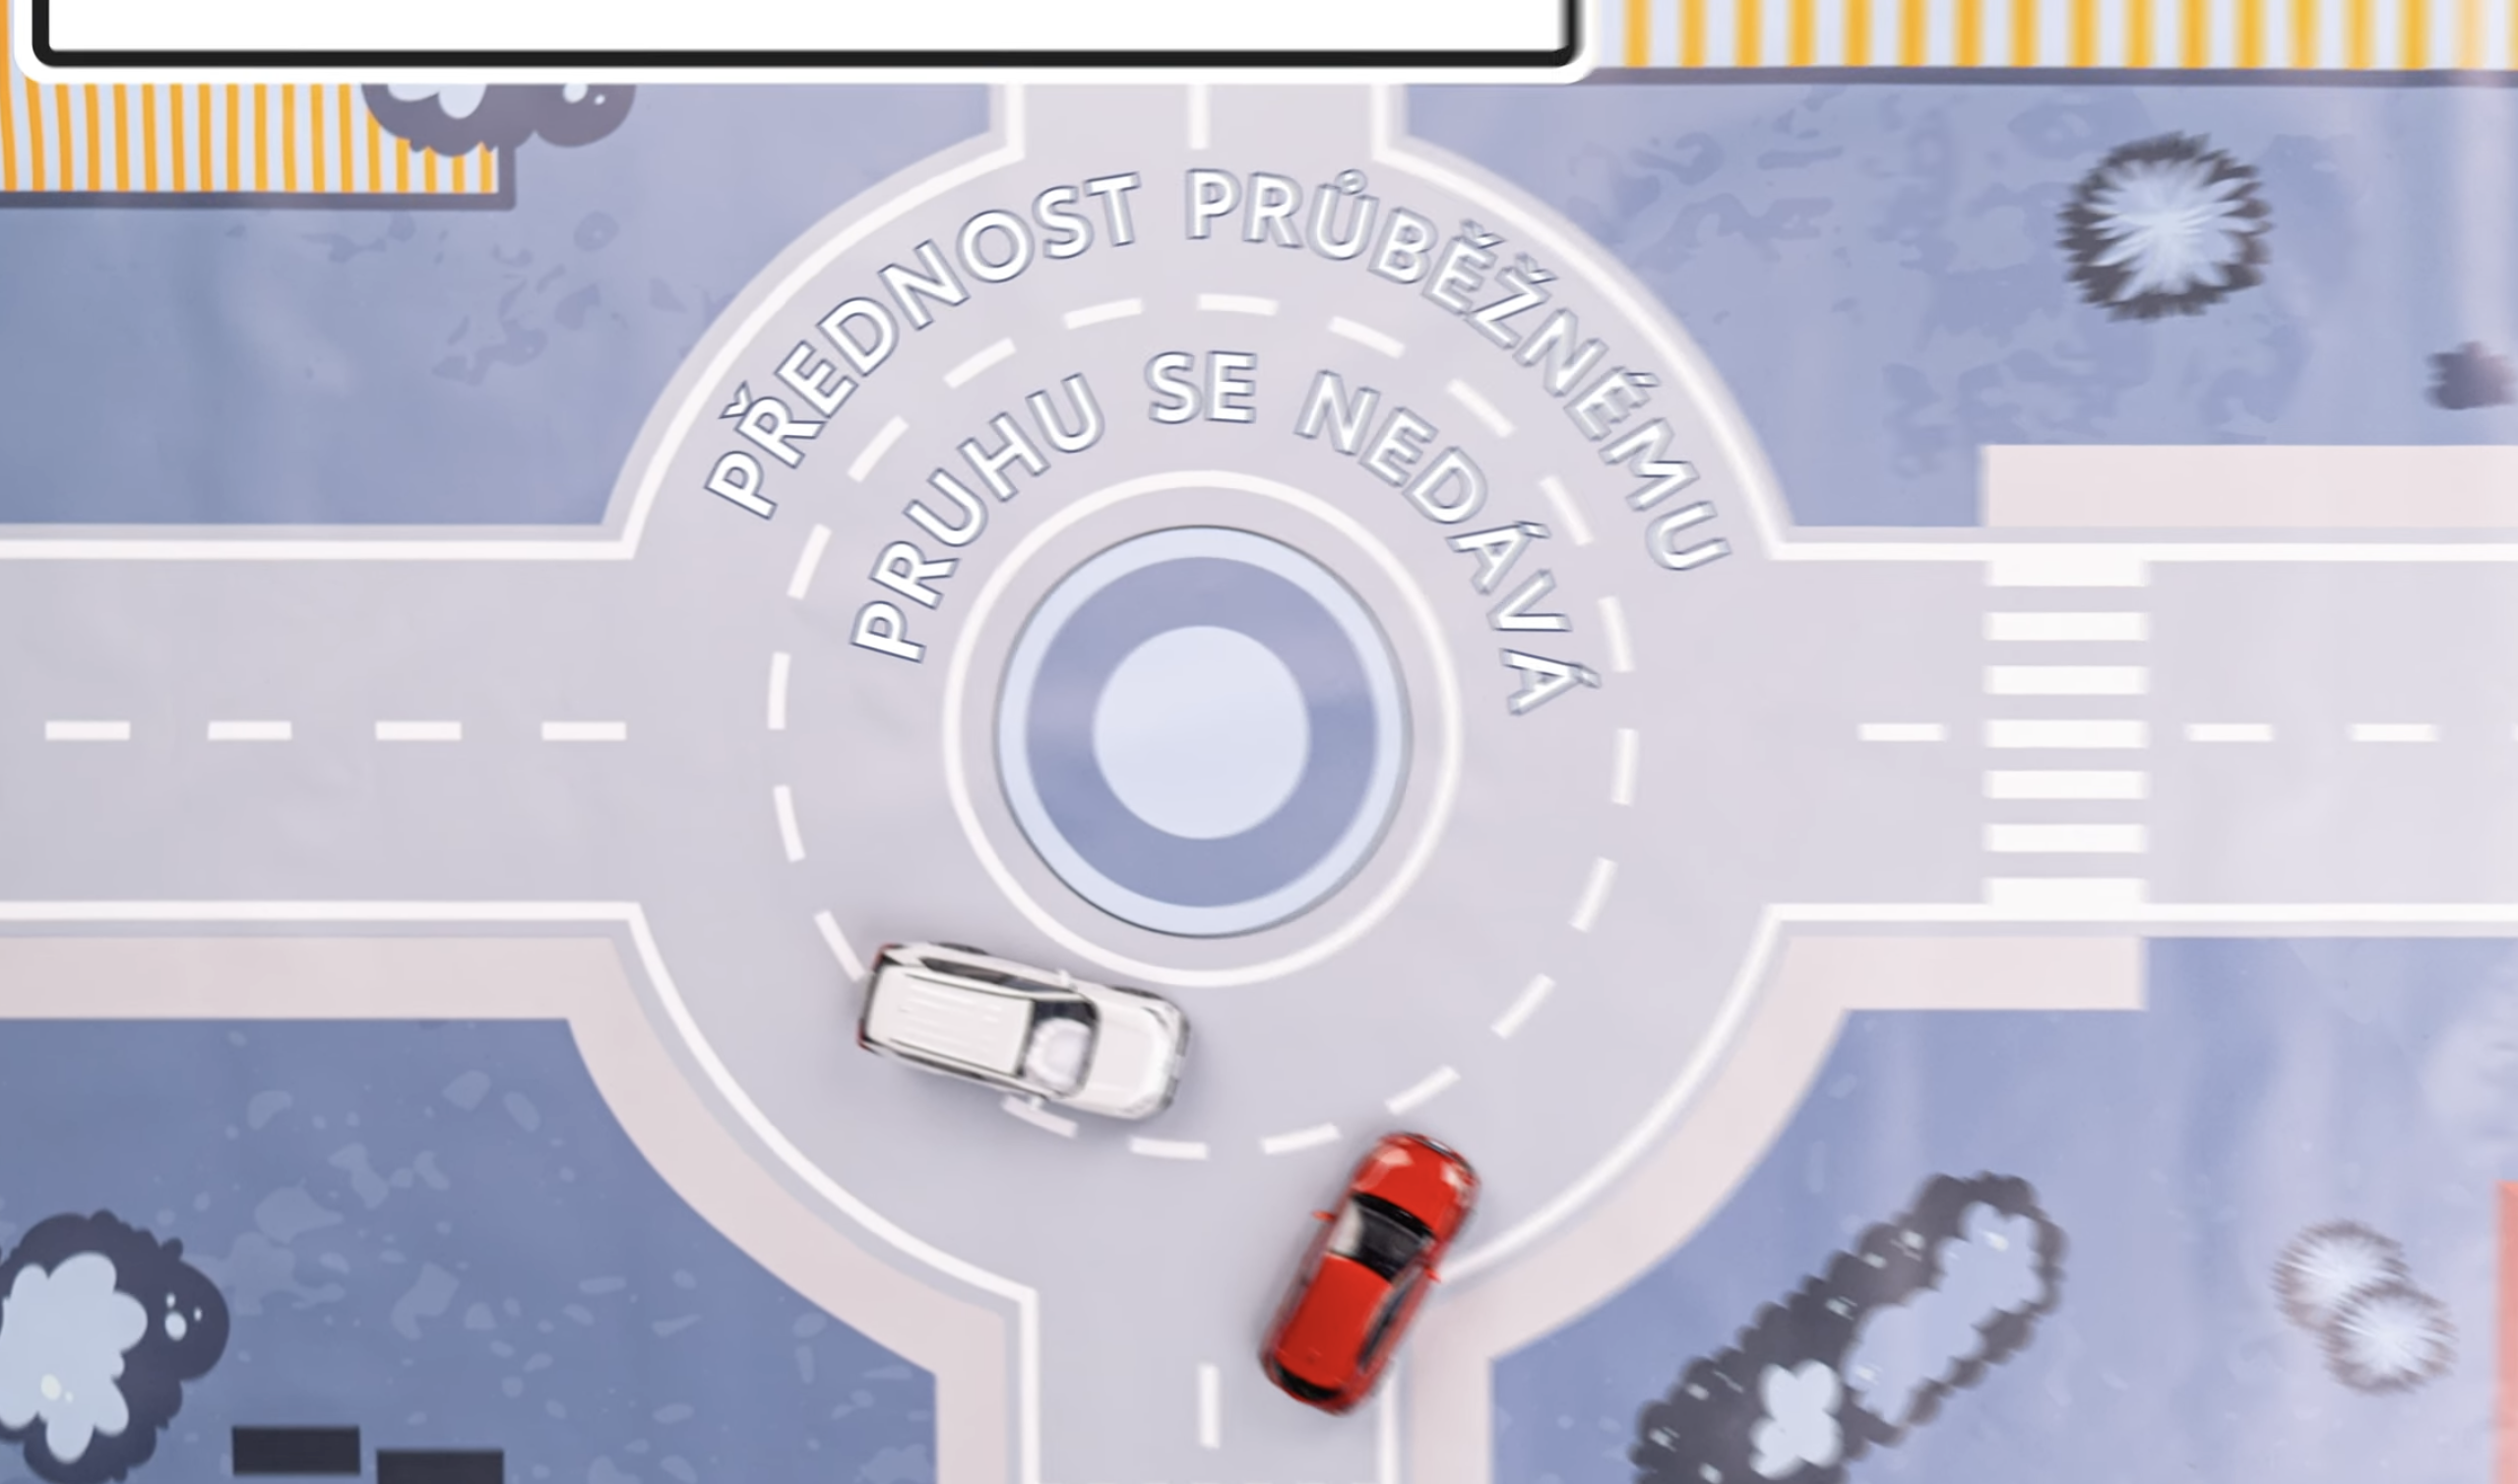 Etiketa na silnici: Jaká pravidla platí na kruhovém objezdu?